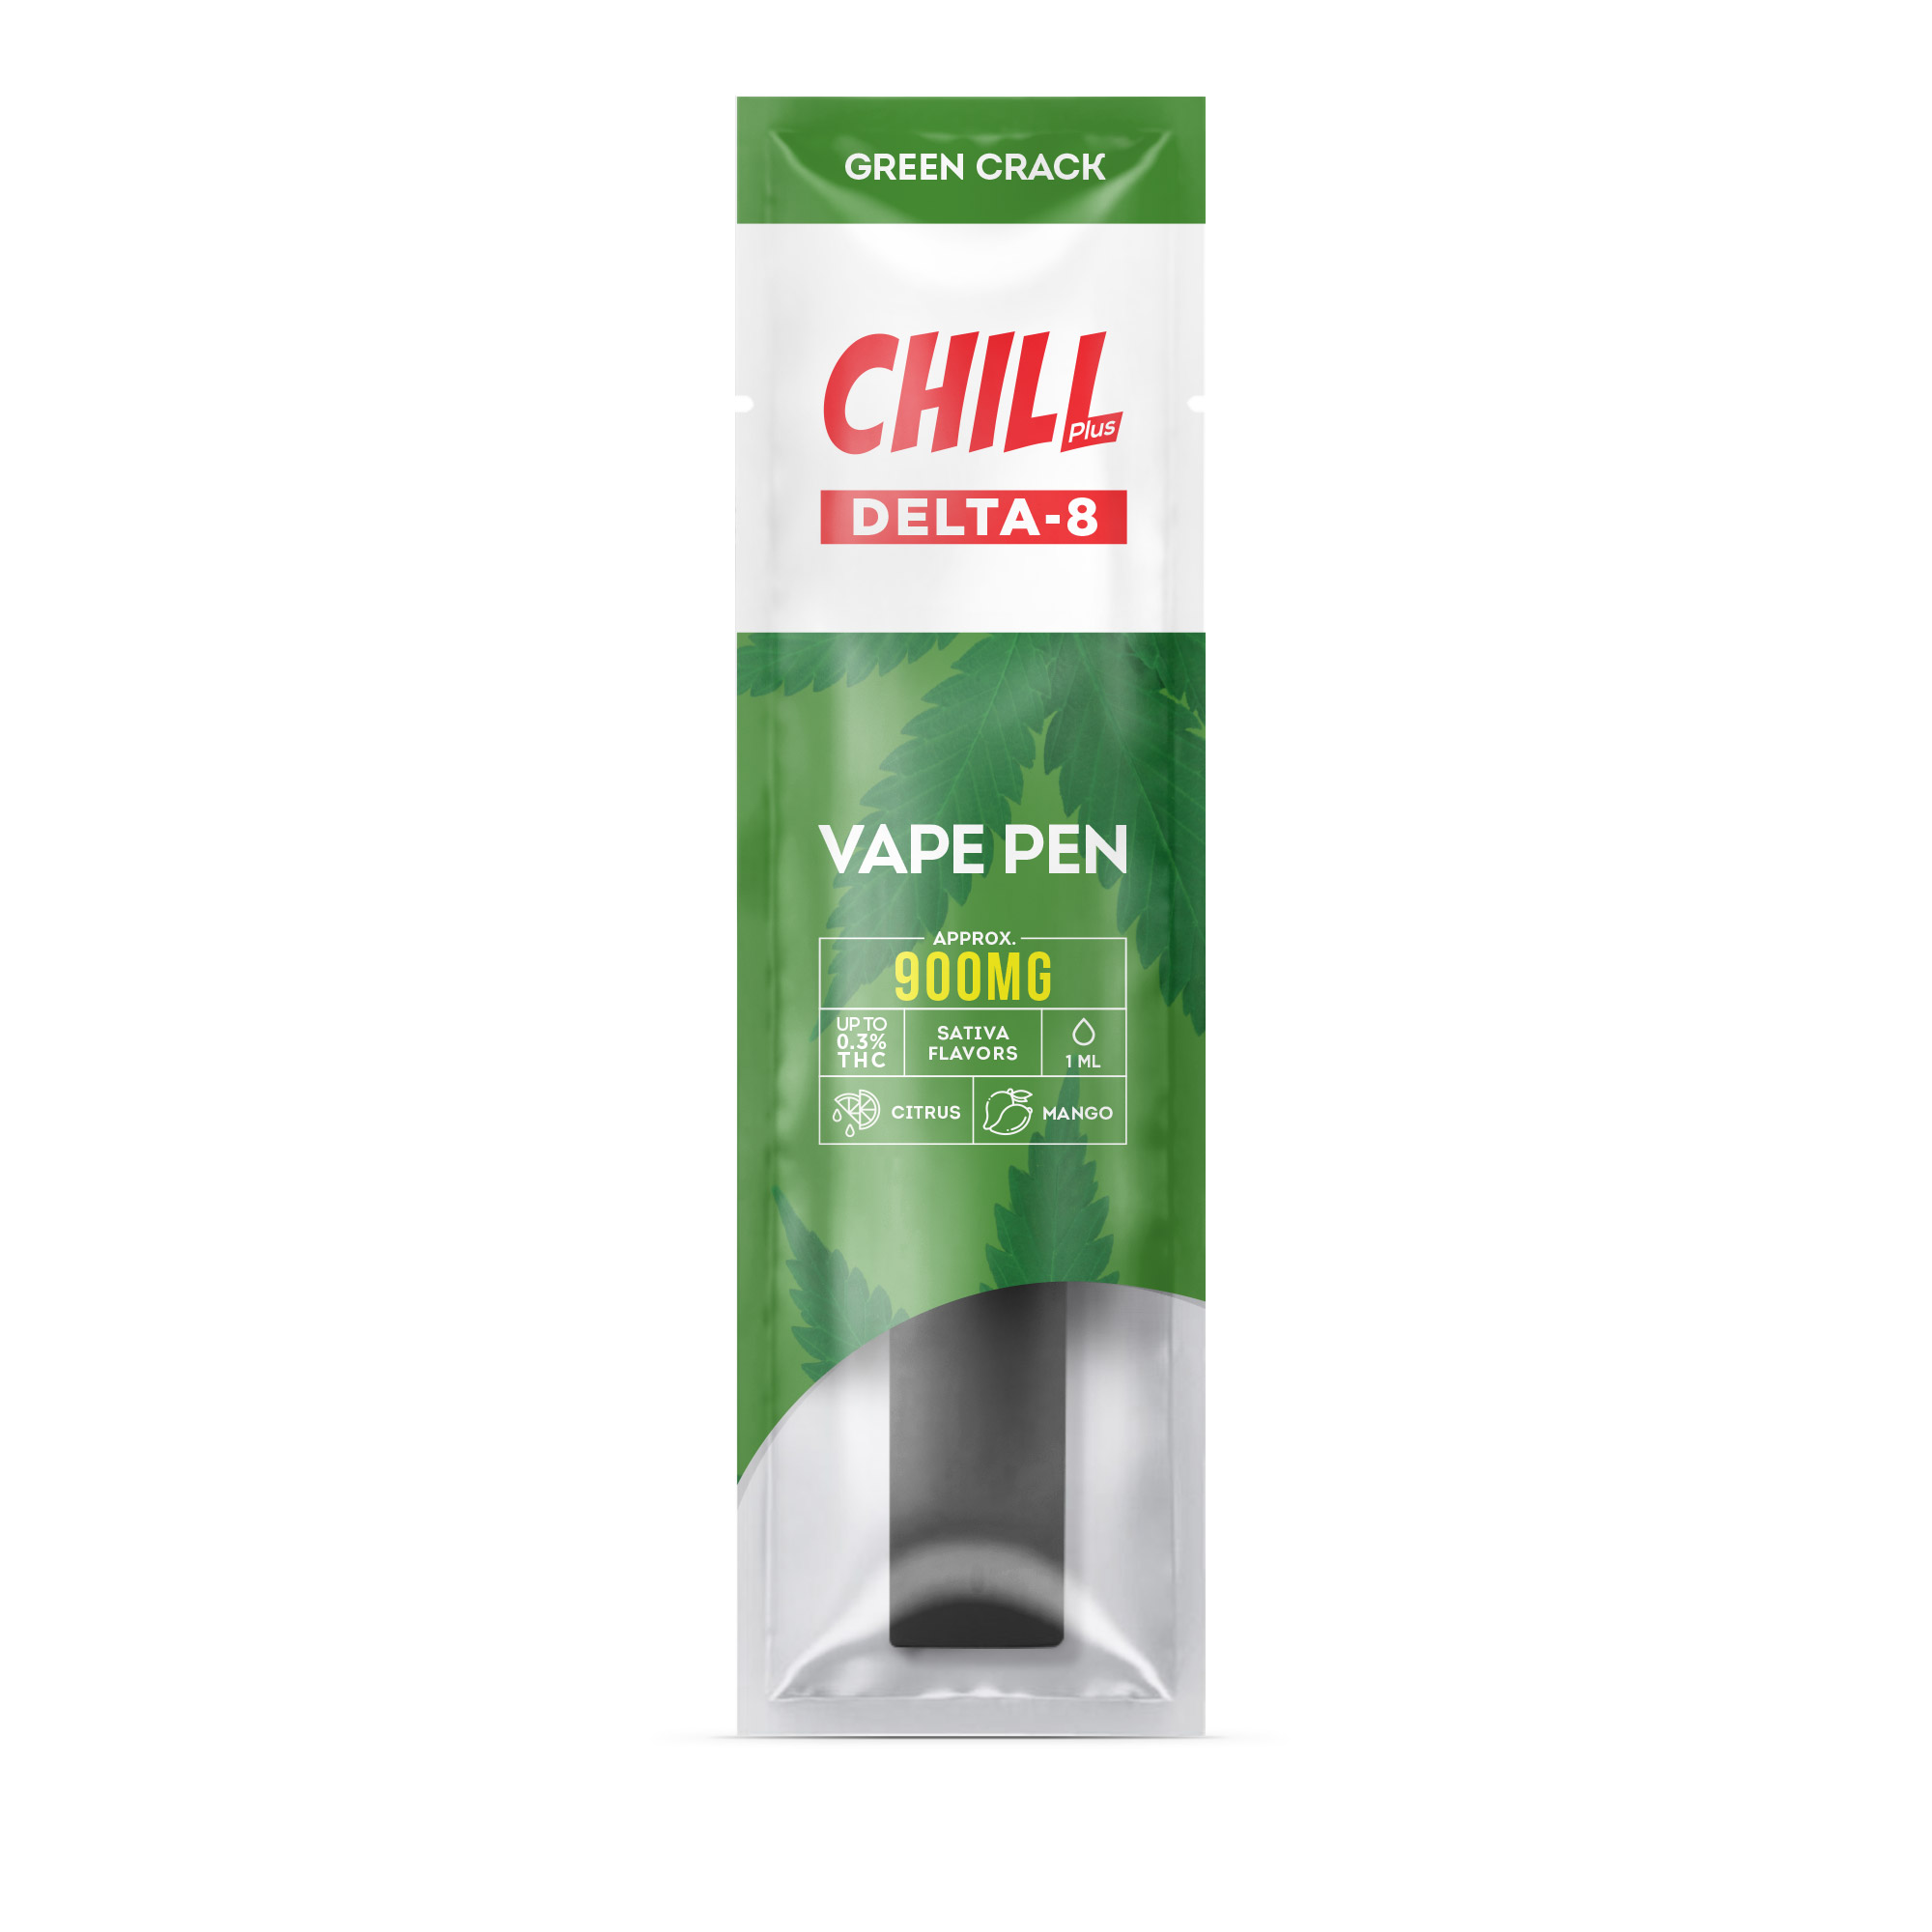 Chill Plus CBD & Delta-8 - Mini Disposable Stick - Green Crack - 900mg (1ml) - Diamond CBD